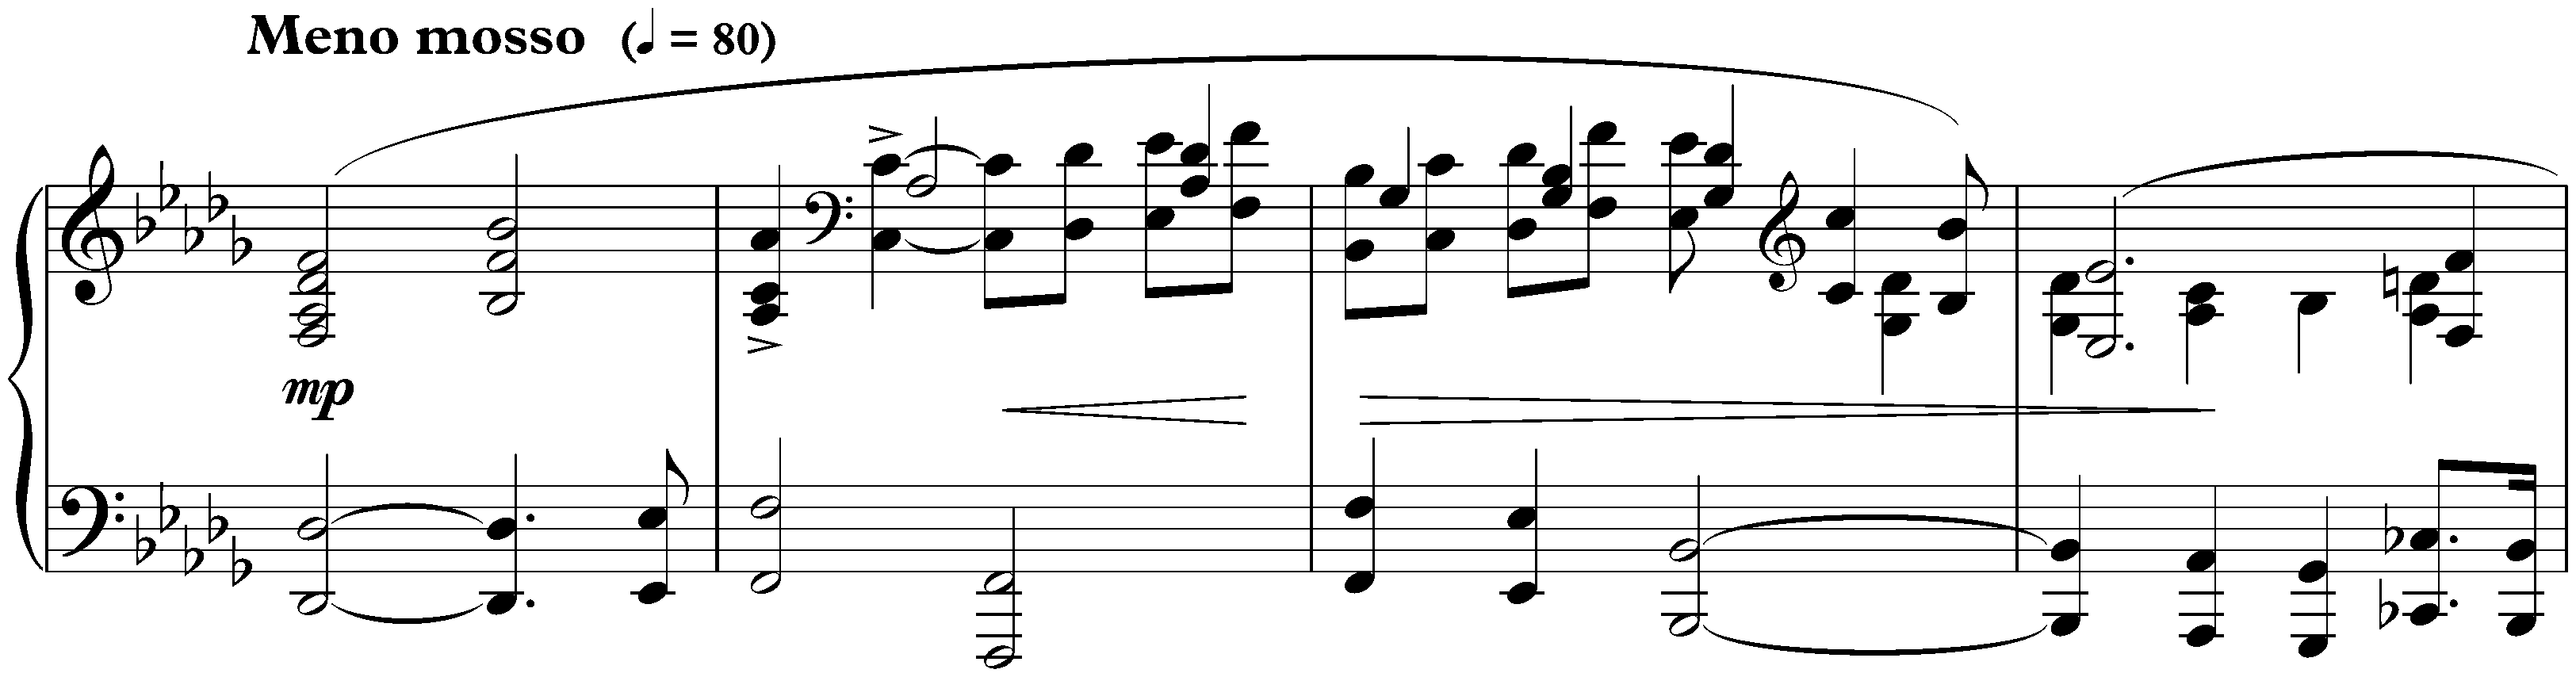 Allegro de concert in B-flat minor, op. 18